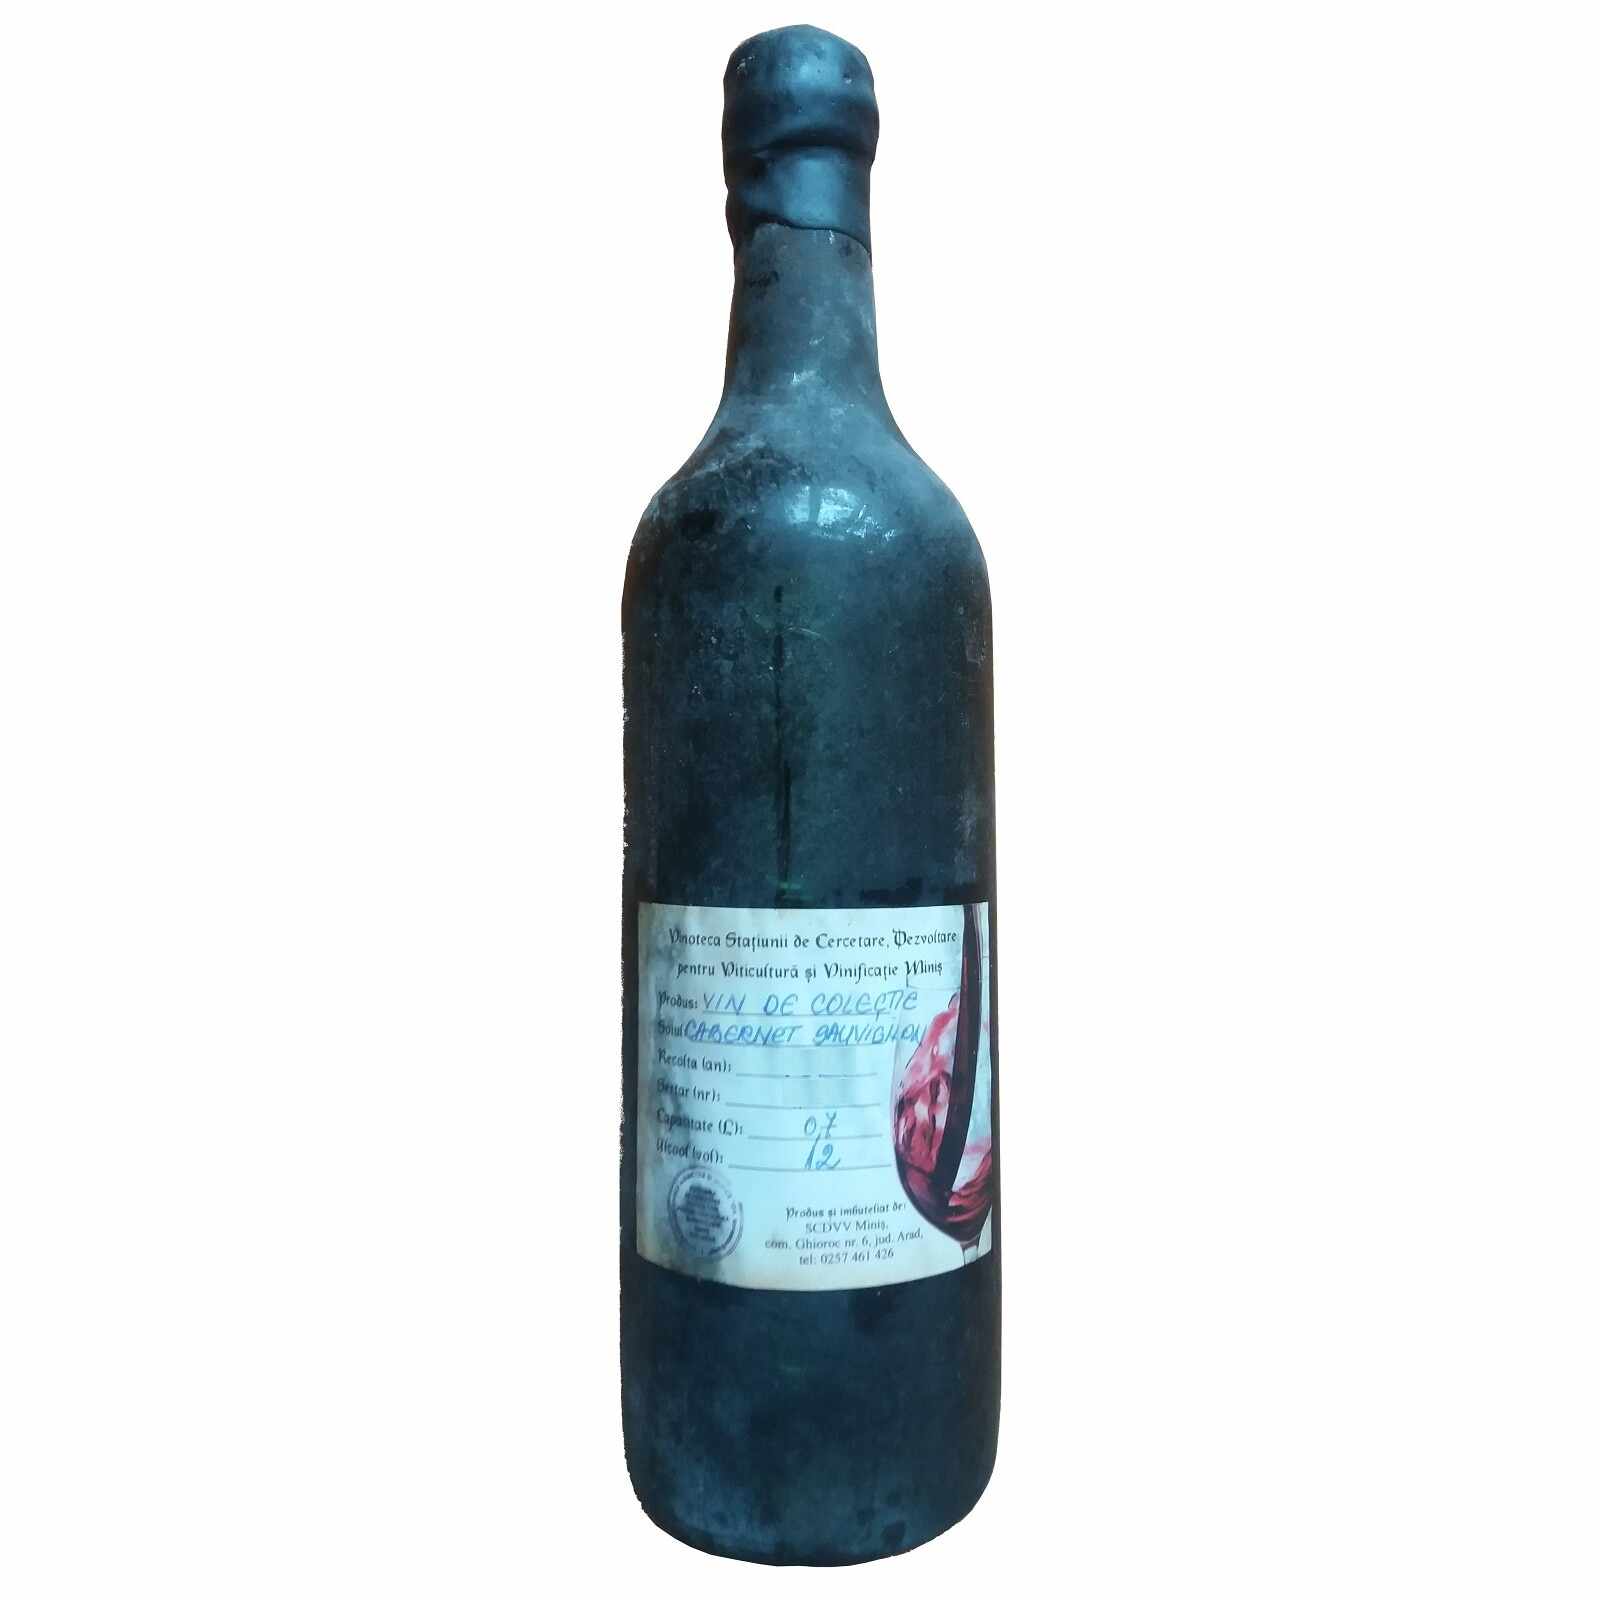 Vin de colectie Minis Cabernet Sauvignon 1983 rosu, in cutie lemn, 0.7L